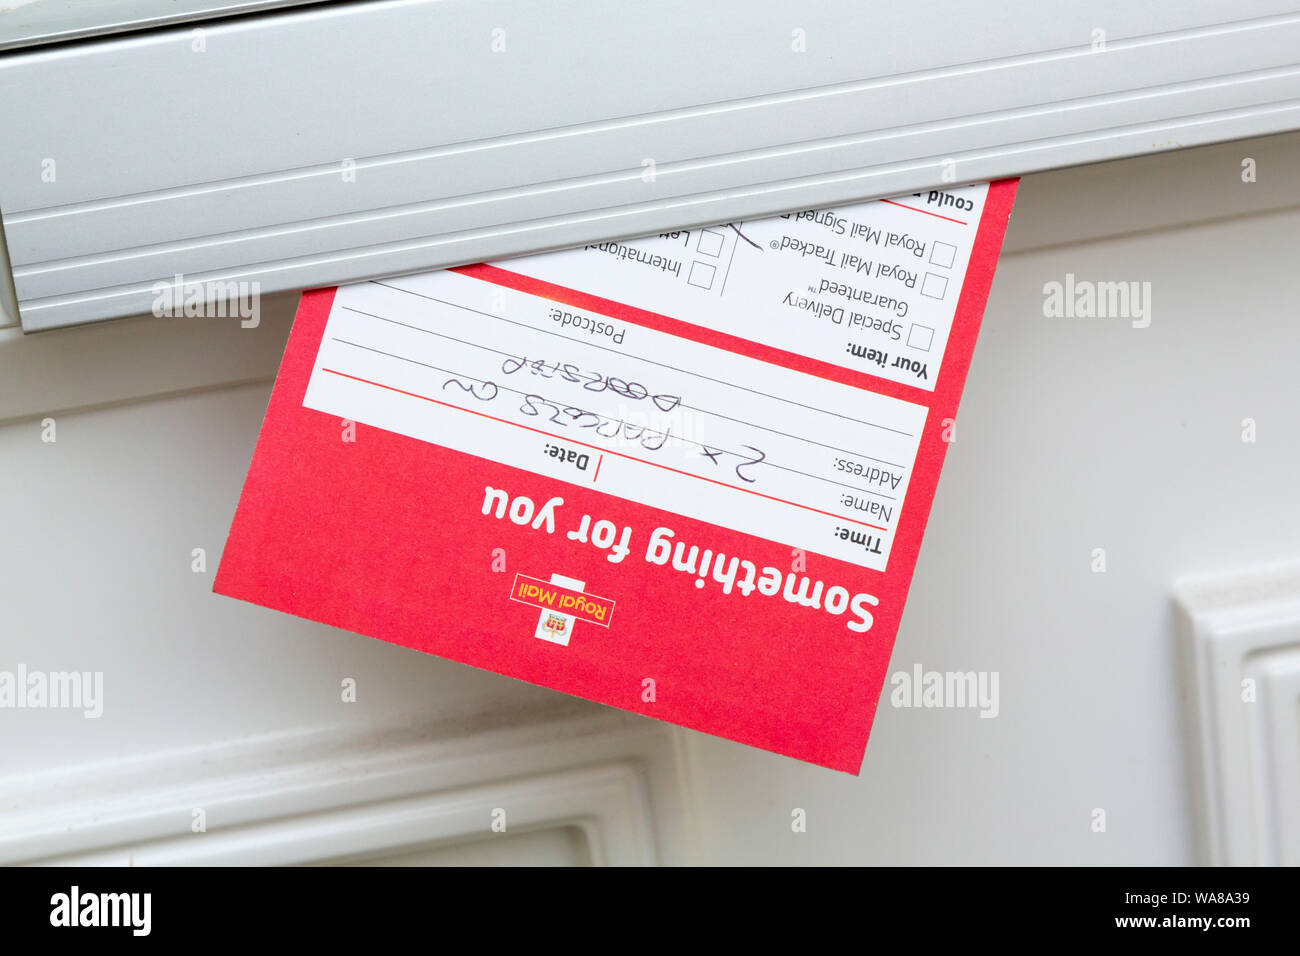 Royal Mail fehlgeschlagen Lieferschein in Letterbox Stockfoto